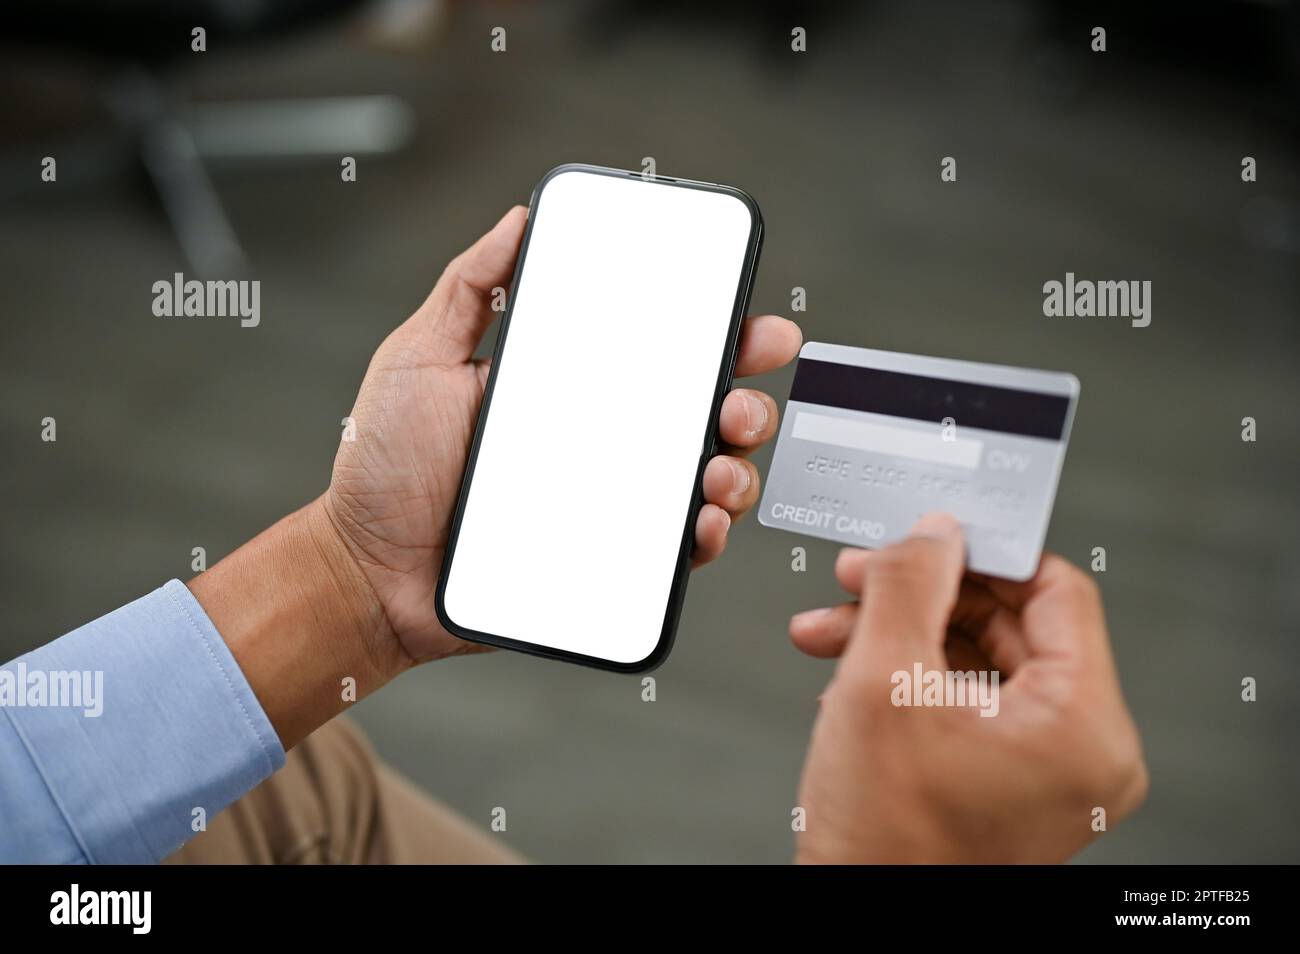 Gros plan d'un homme asiatique utilisant son application bancaire mobile dans une pièce. maquette d'écran blanc de smartphone. Paiement en ligne, en ligne sh Banque D'Images